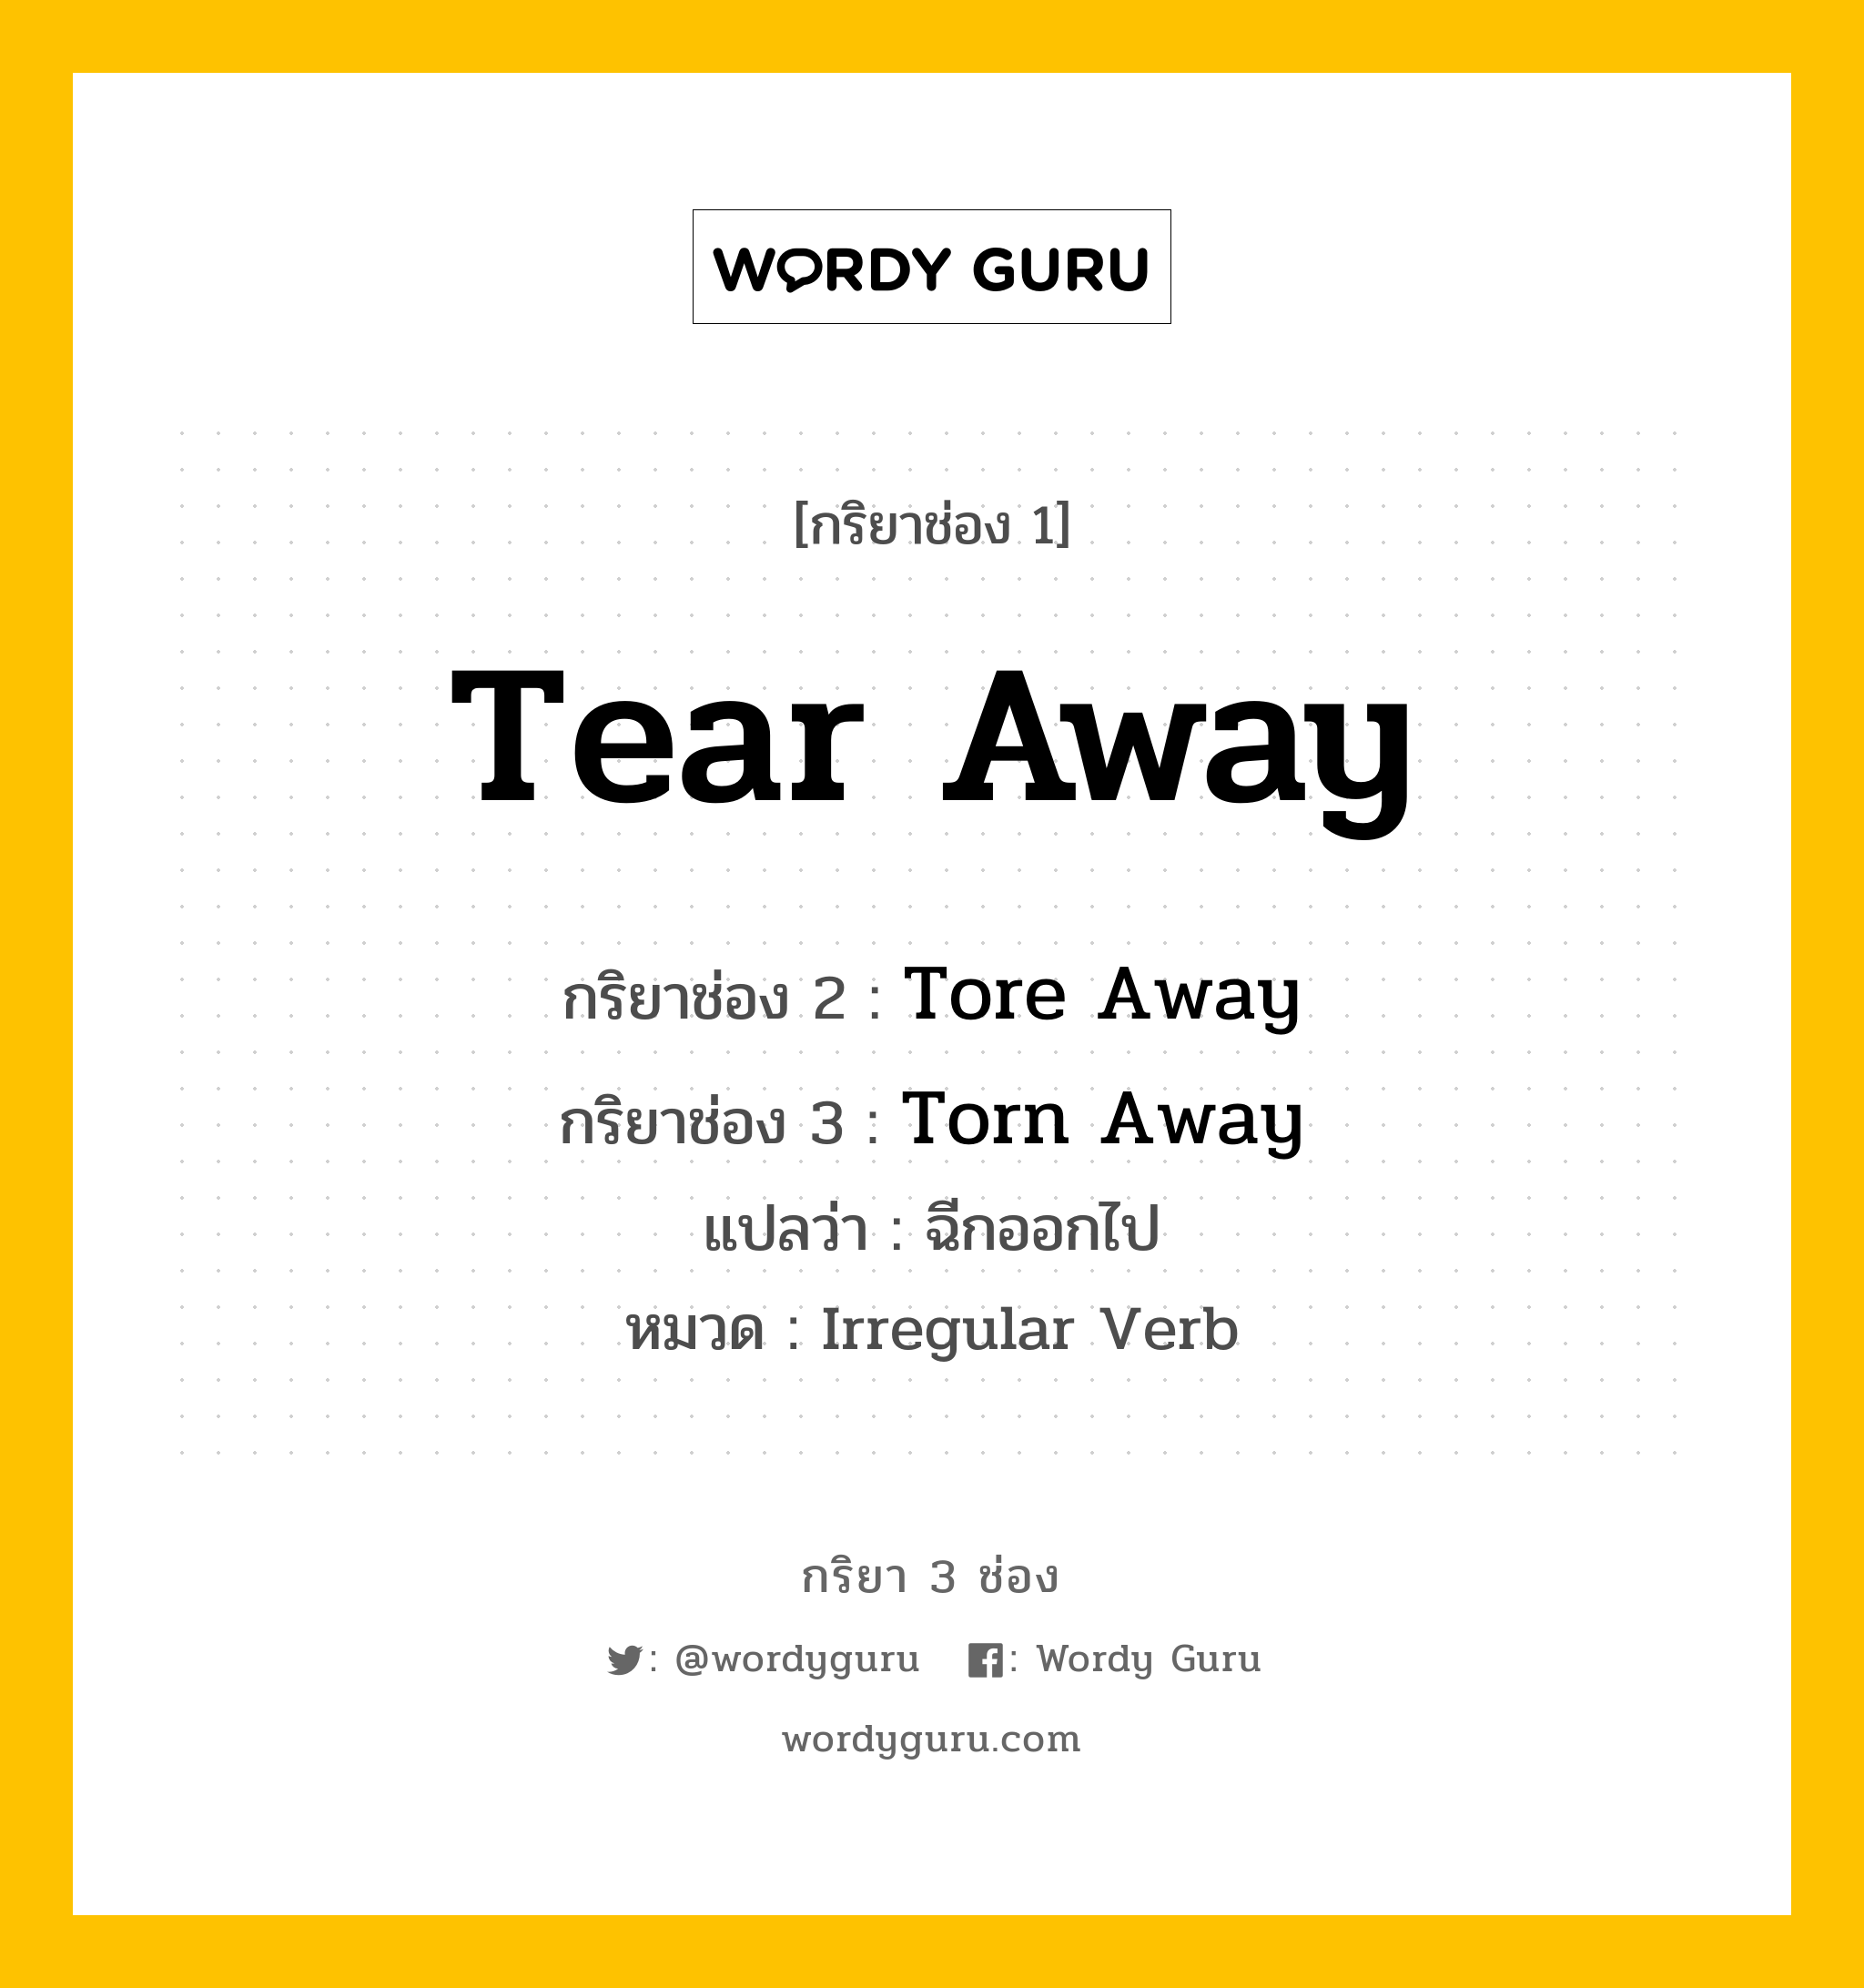 กริยา 3 ช่อง: Tear Away ช่อง 2 Tear Away ช่อง 3 คืออะไร, กริยาช่อง 1 Tear Away กริยาช่อง 2 Tore Away กริยาช่อง 3 Torn Away แปลว่า ฉีกออกไป หมวด Irregular Verb หมวด Irregular Verb